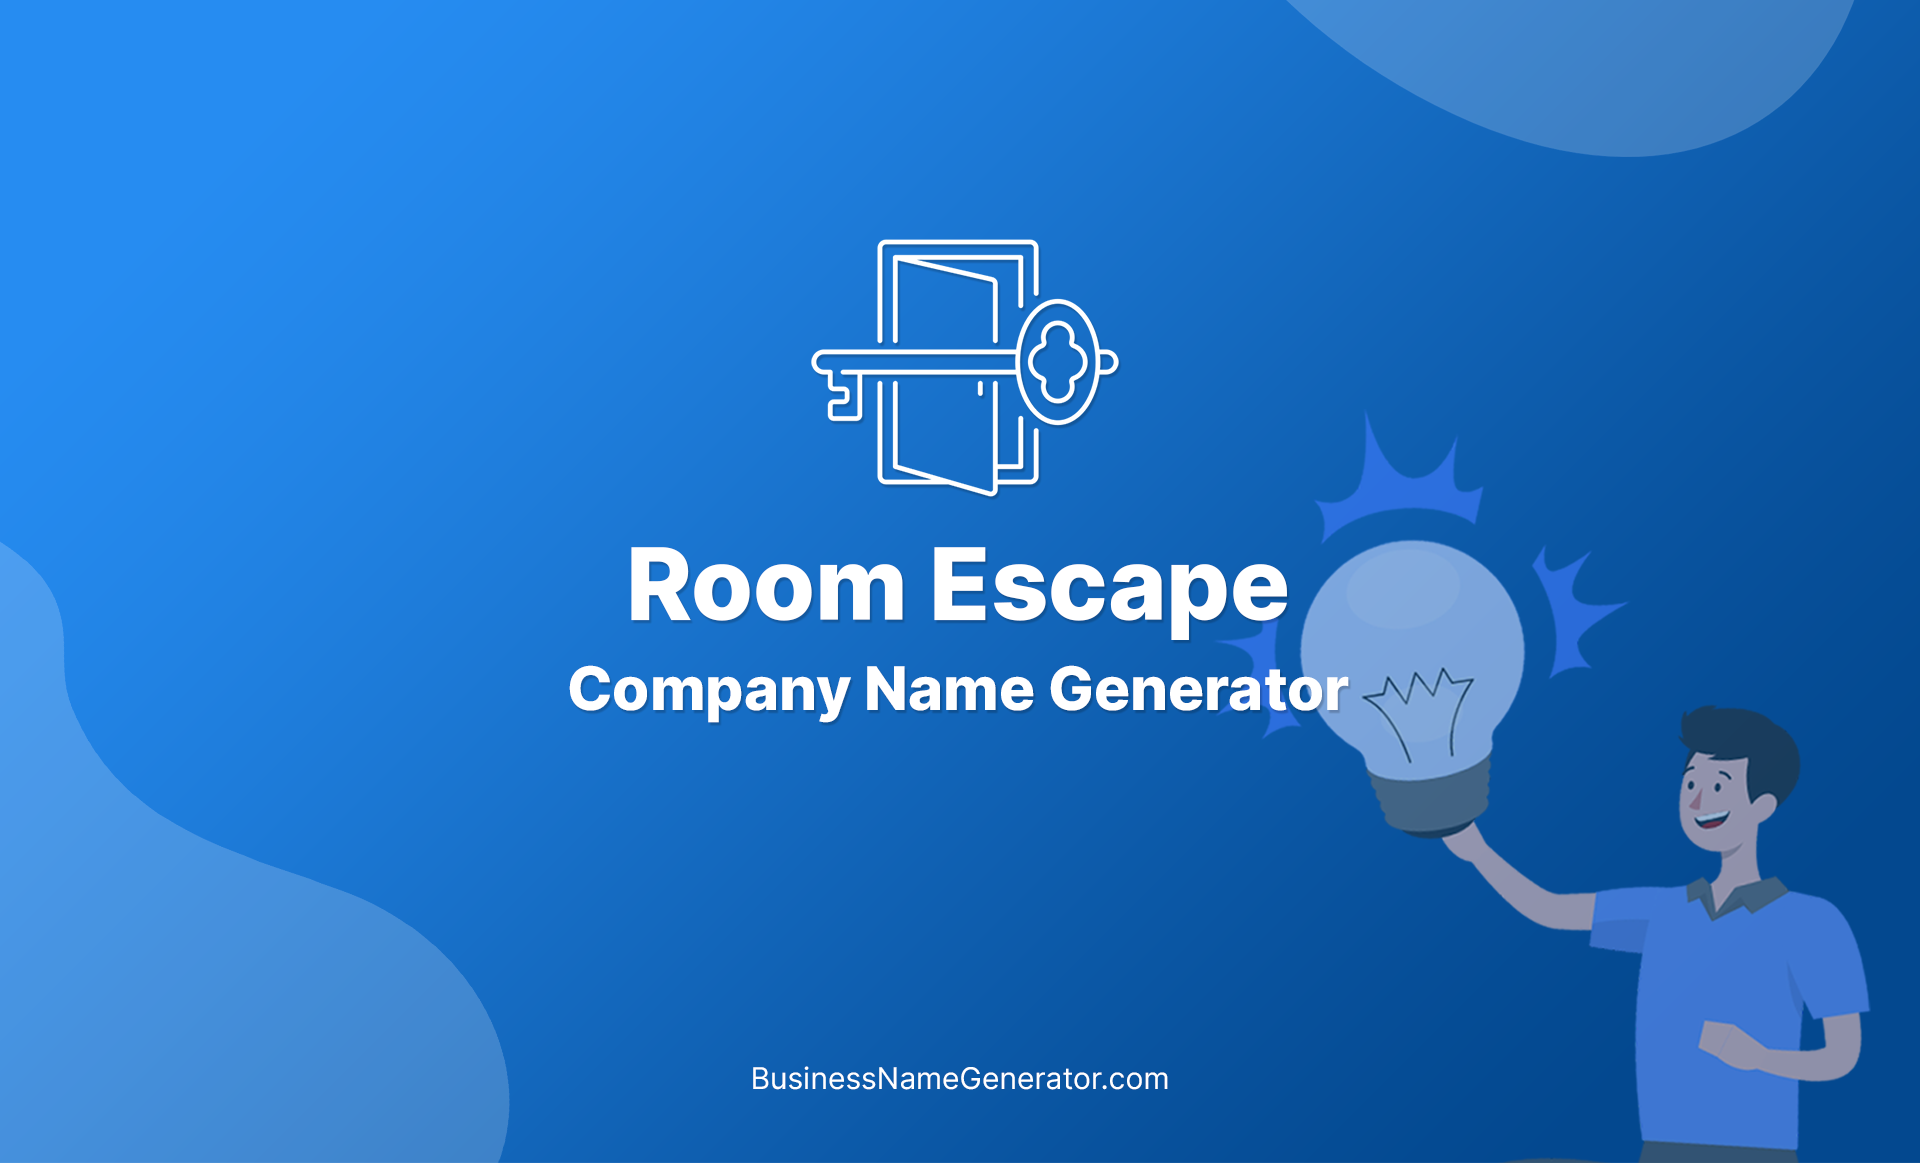 Room Escape Company Name Generator